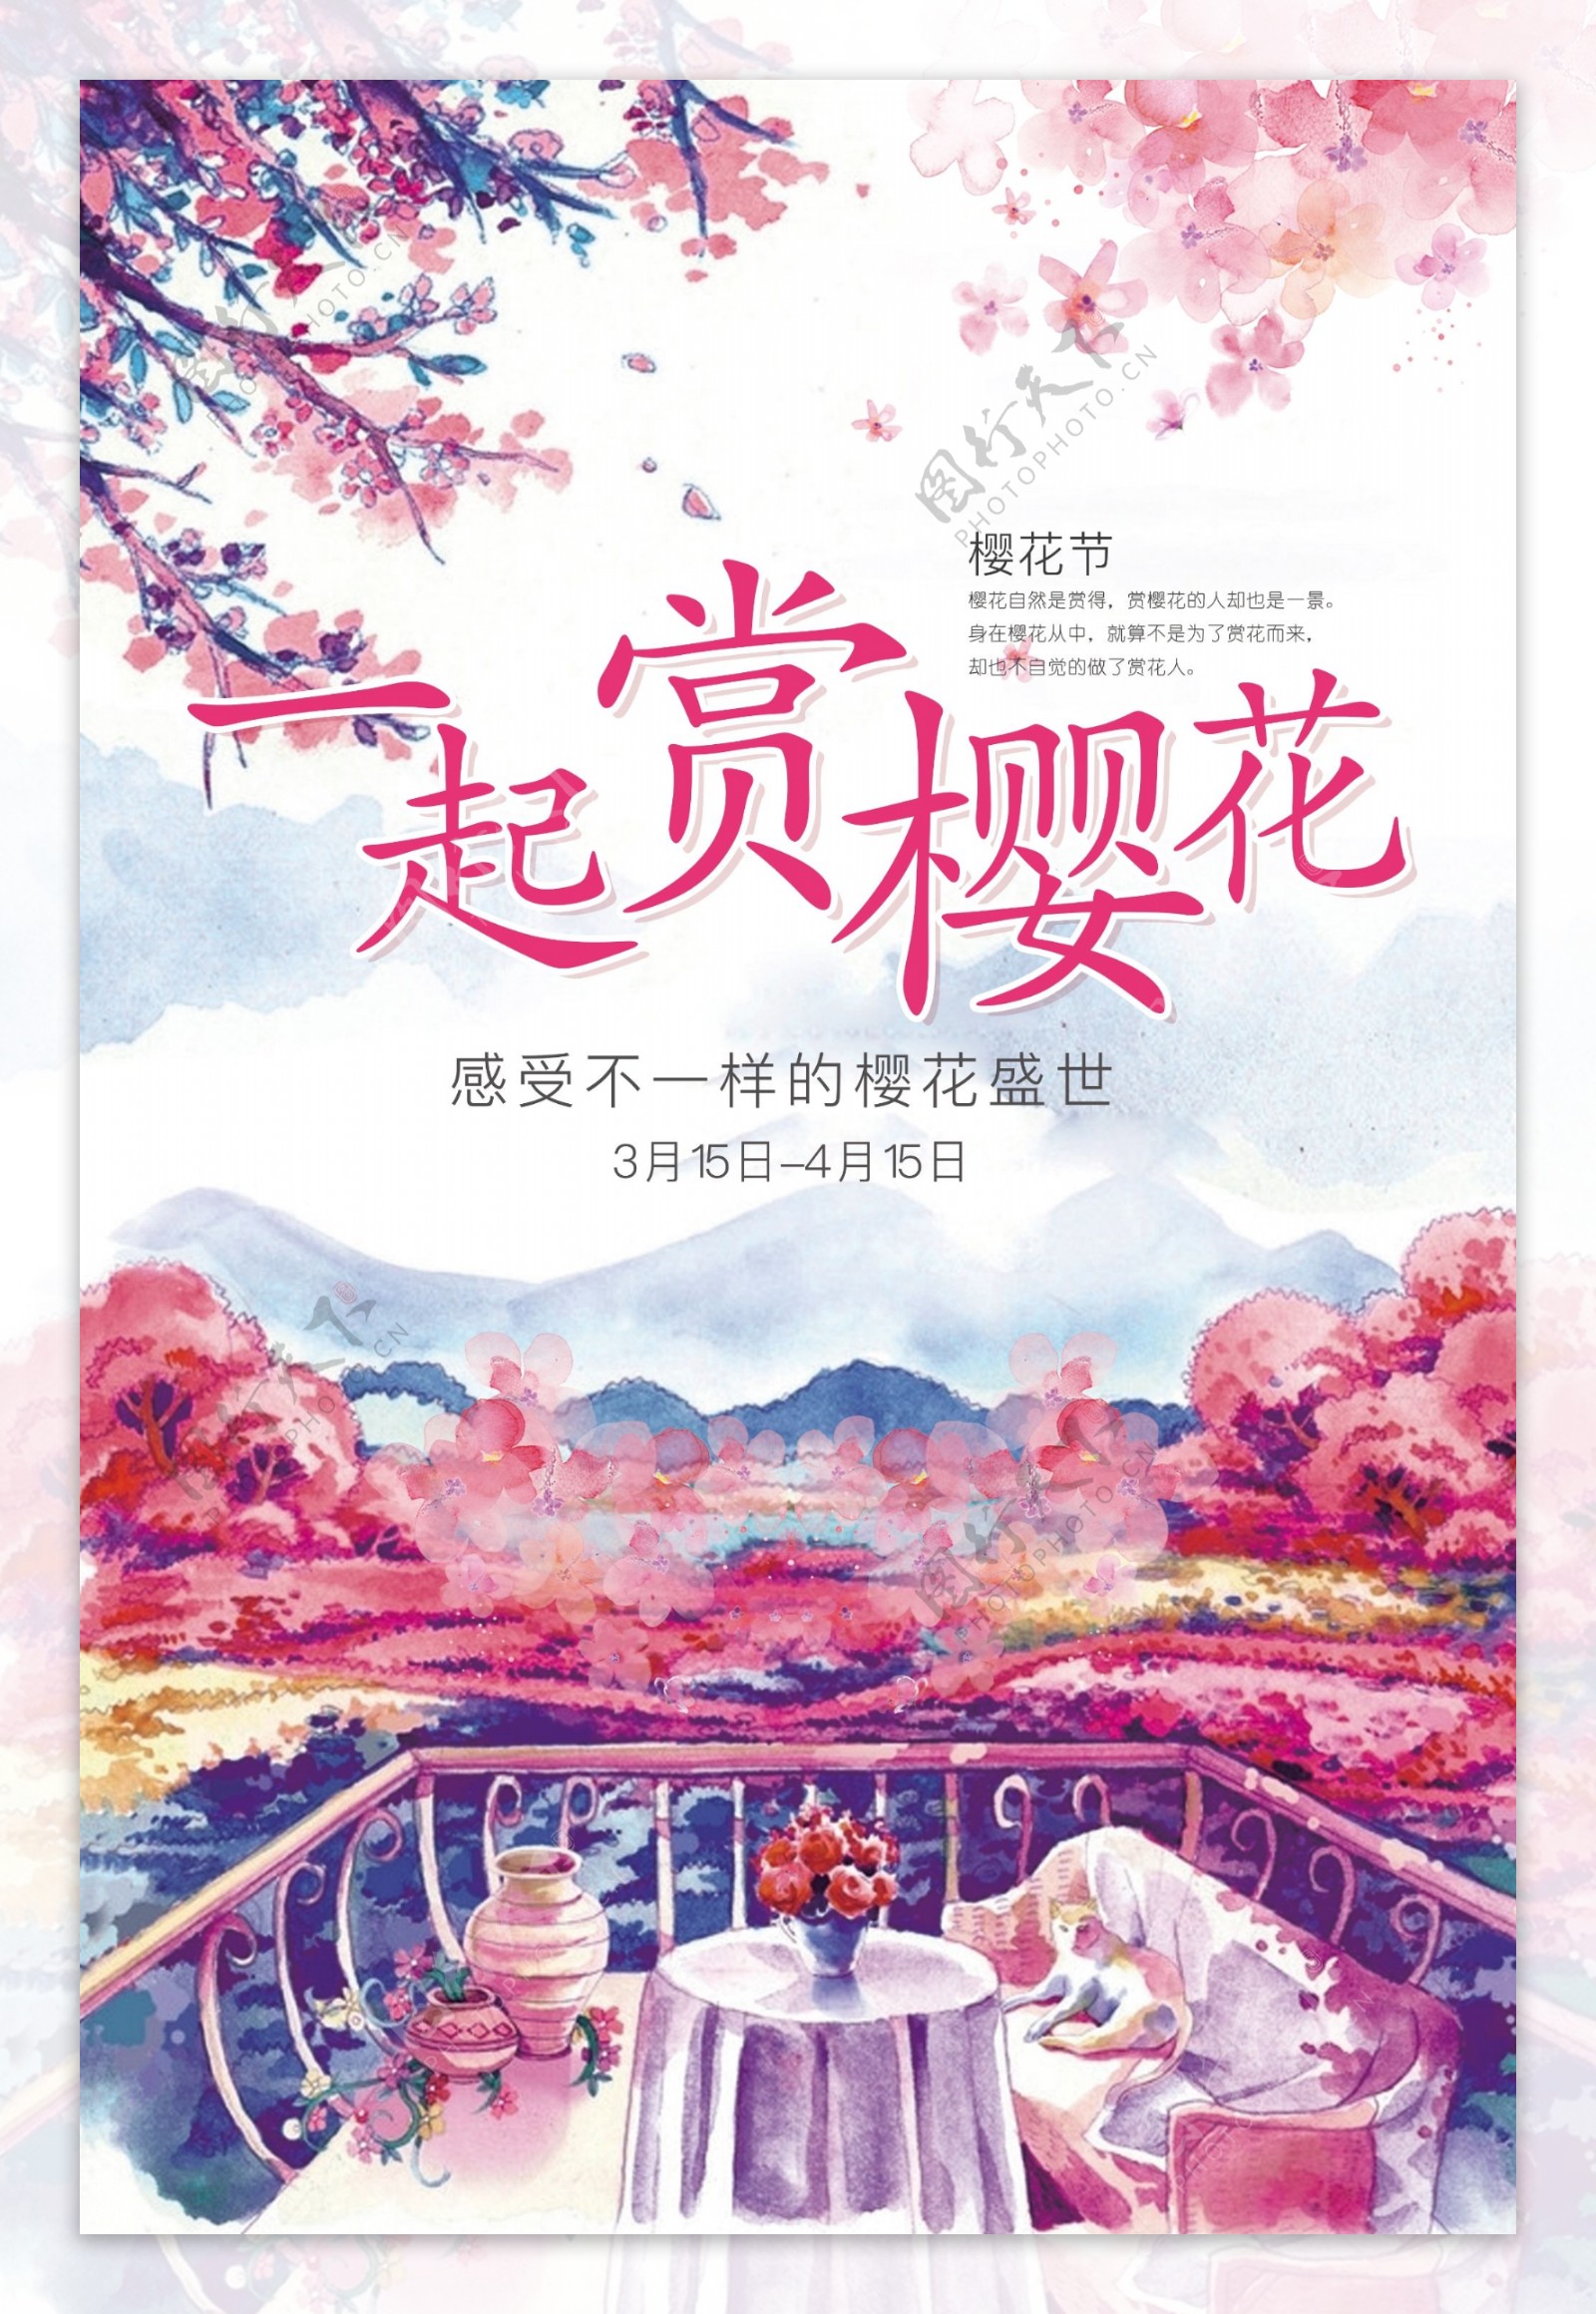 粉色浪漫樱花节水墨彩绘宣传海报